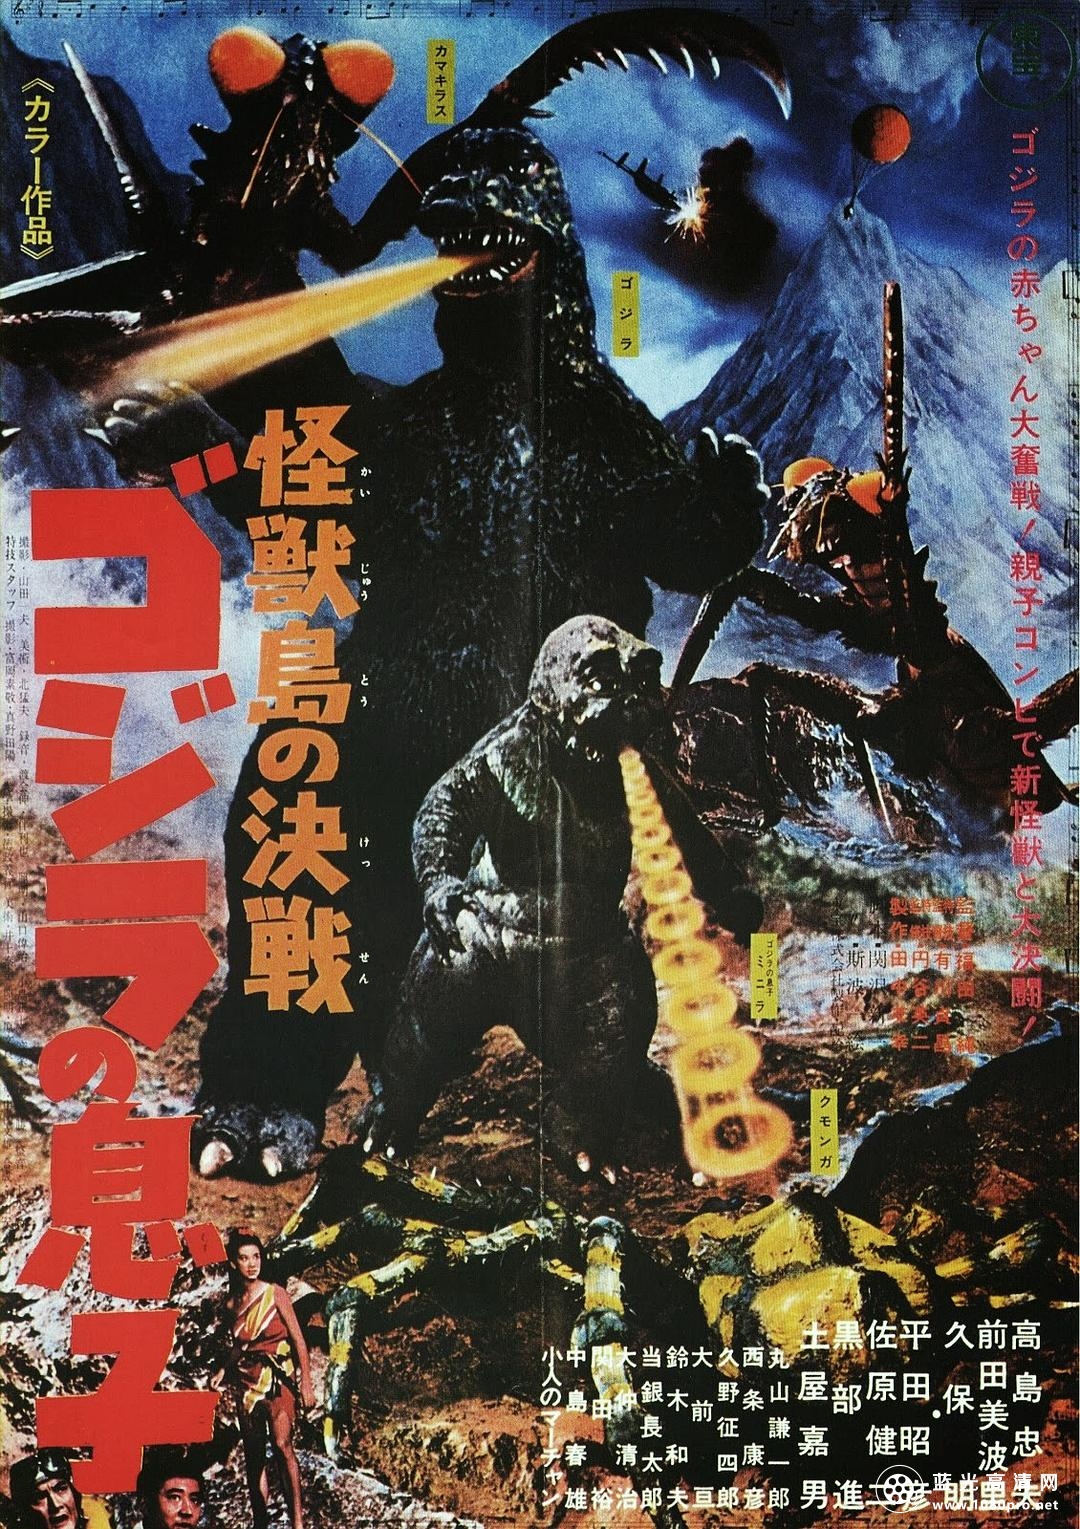 怪兽岛决战:哥斯拉之子 Son.of.Godzilla.1967.Criterion.720p.BluRay.x264-JRP 4.38GB